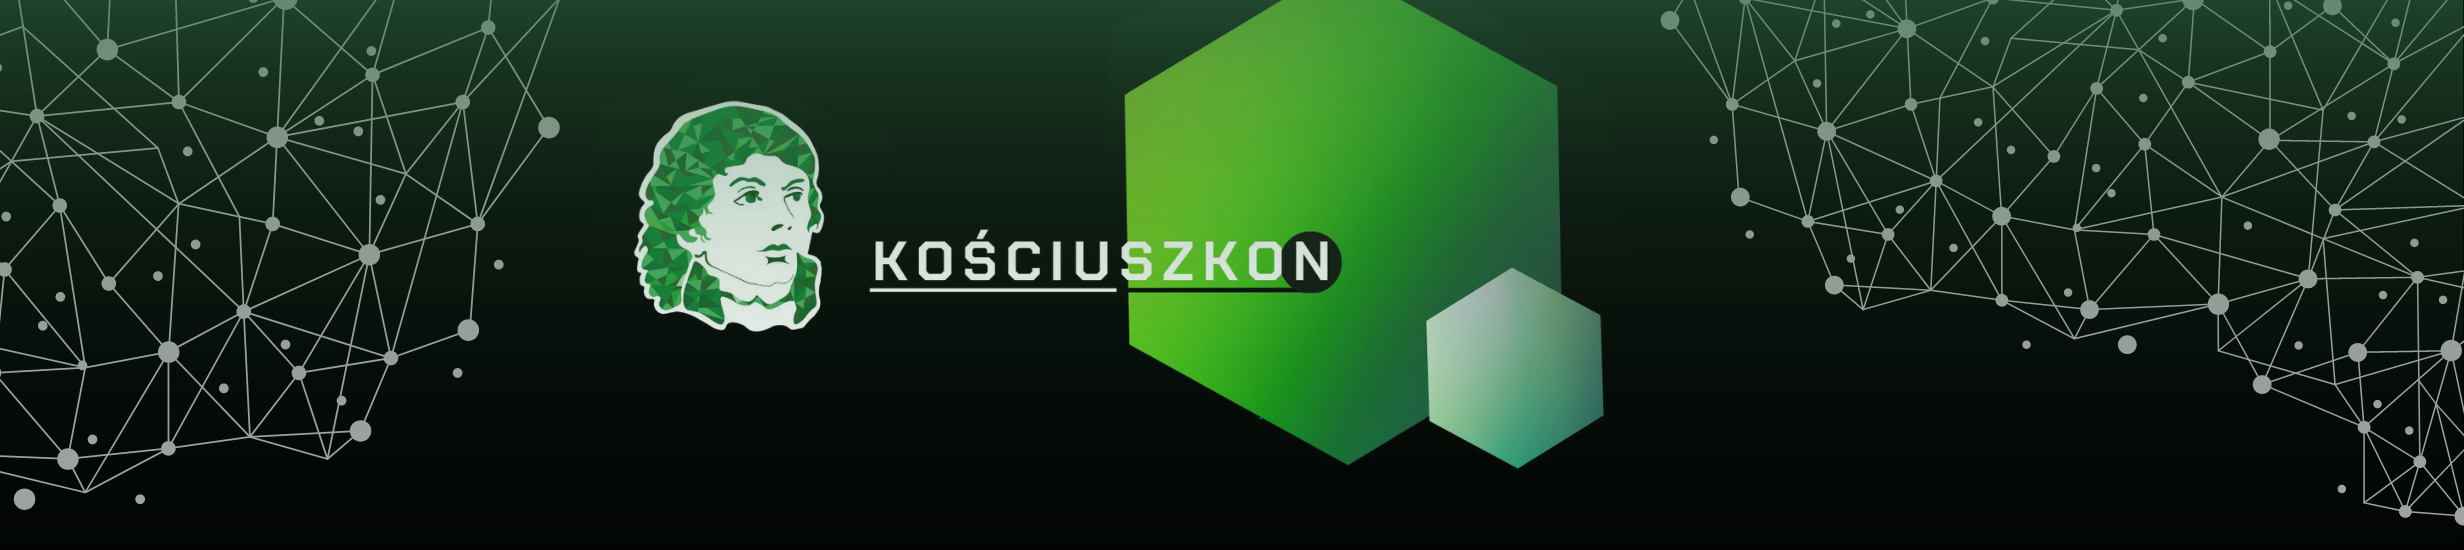 Kościuszkon - Hackathon i konferencje